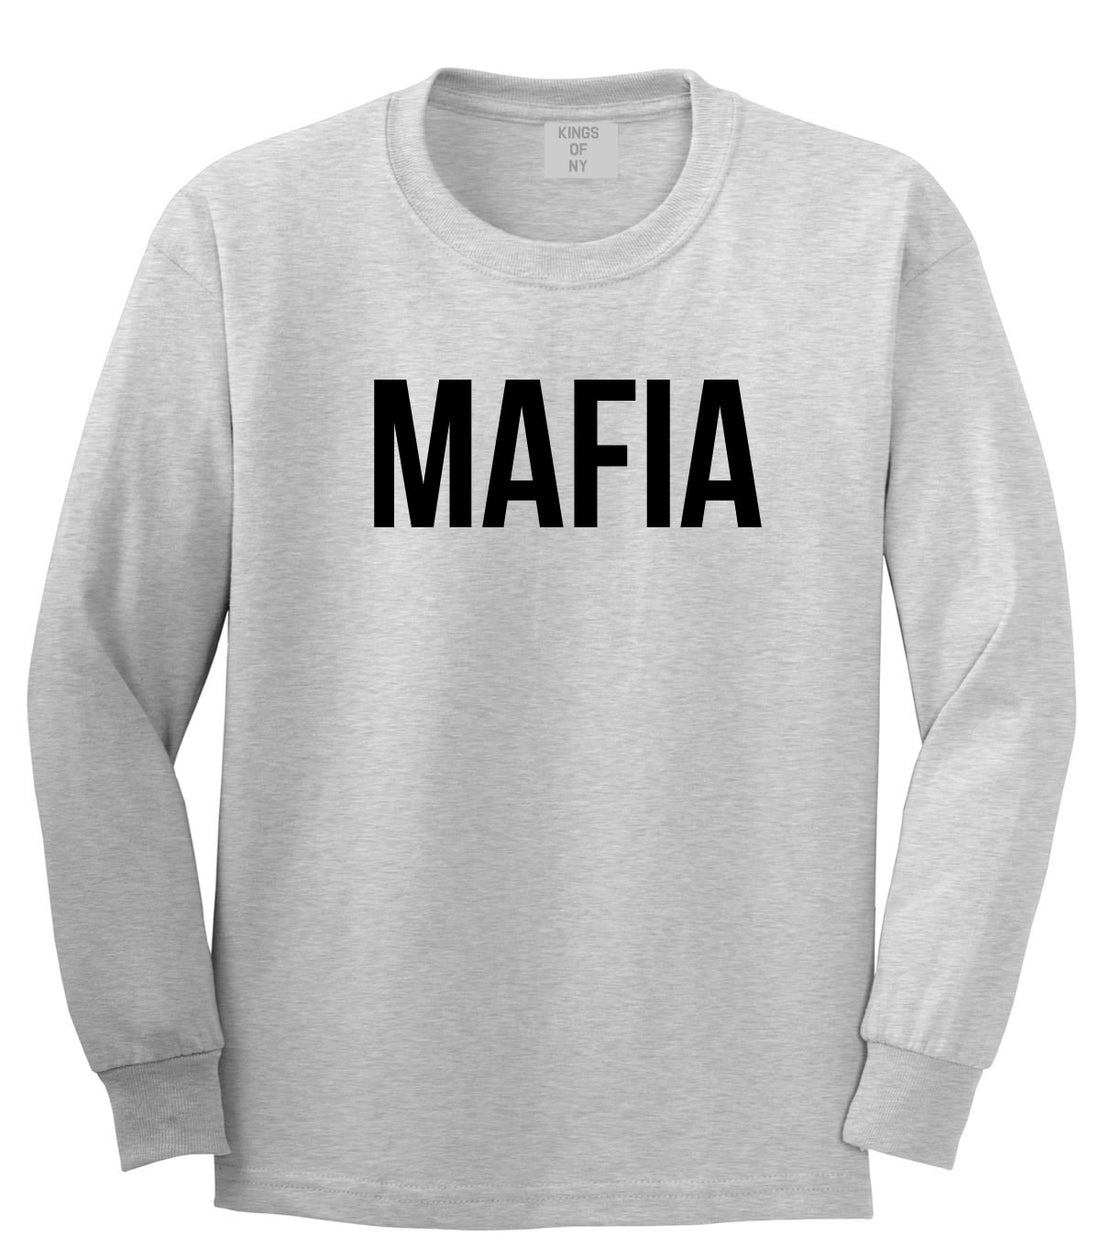 Mafia Junior Italian Mob  Long Sleeve T-Shirt in Grey By Kings Of NY